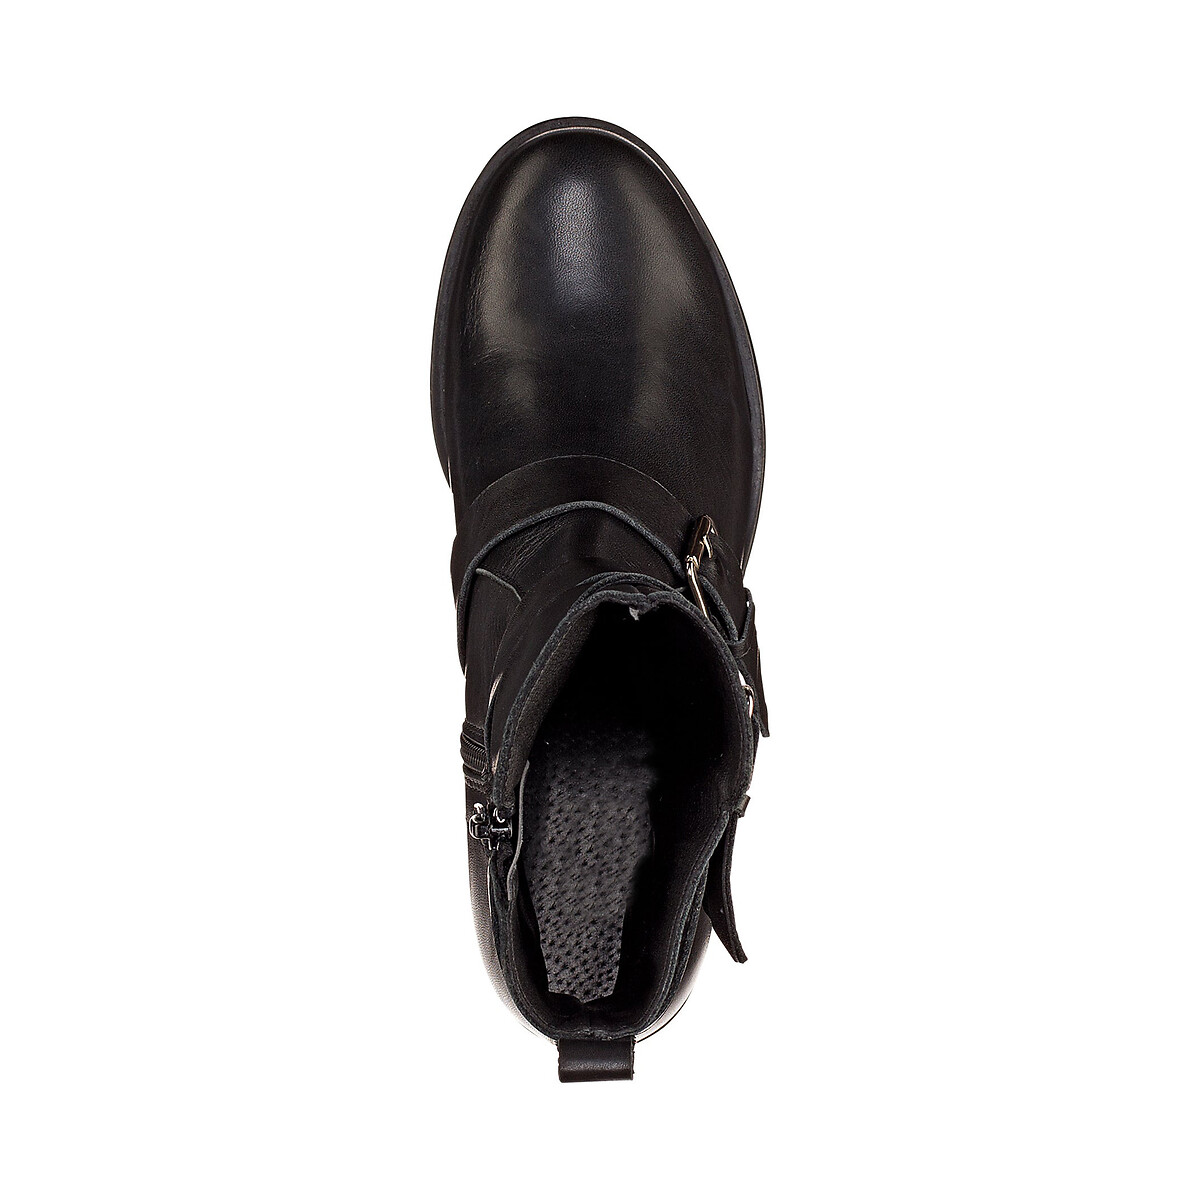 Ботинки La Redoute Кожаные в байкерском стиле 38 черный, размер 38 - фото 3